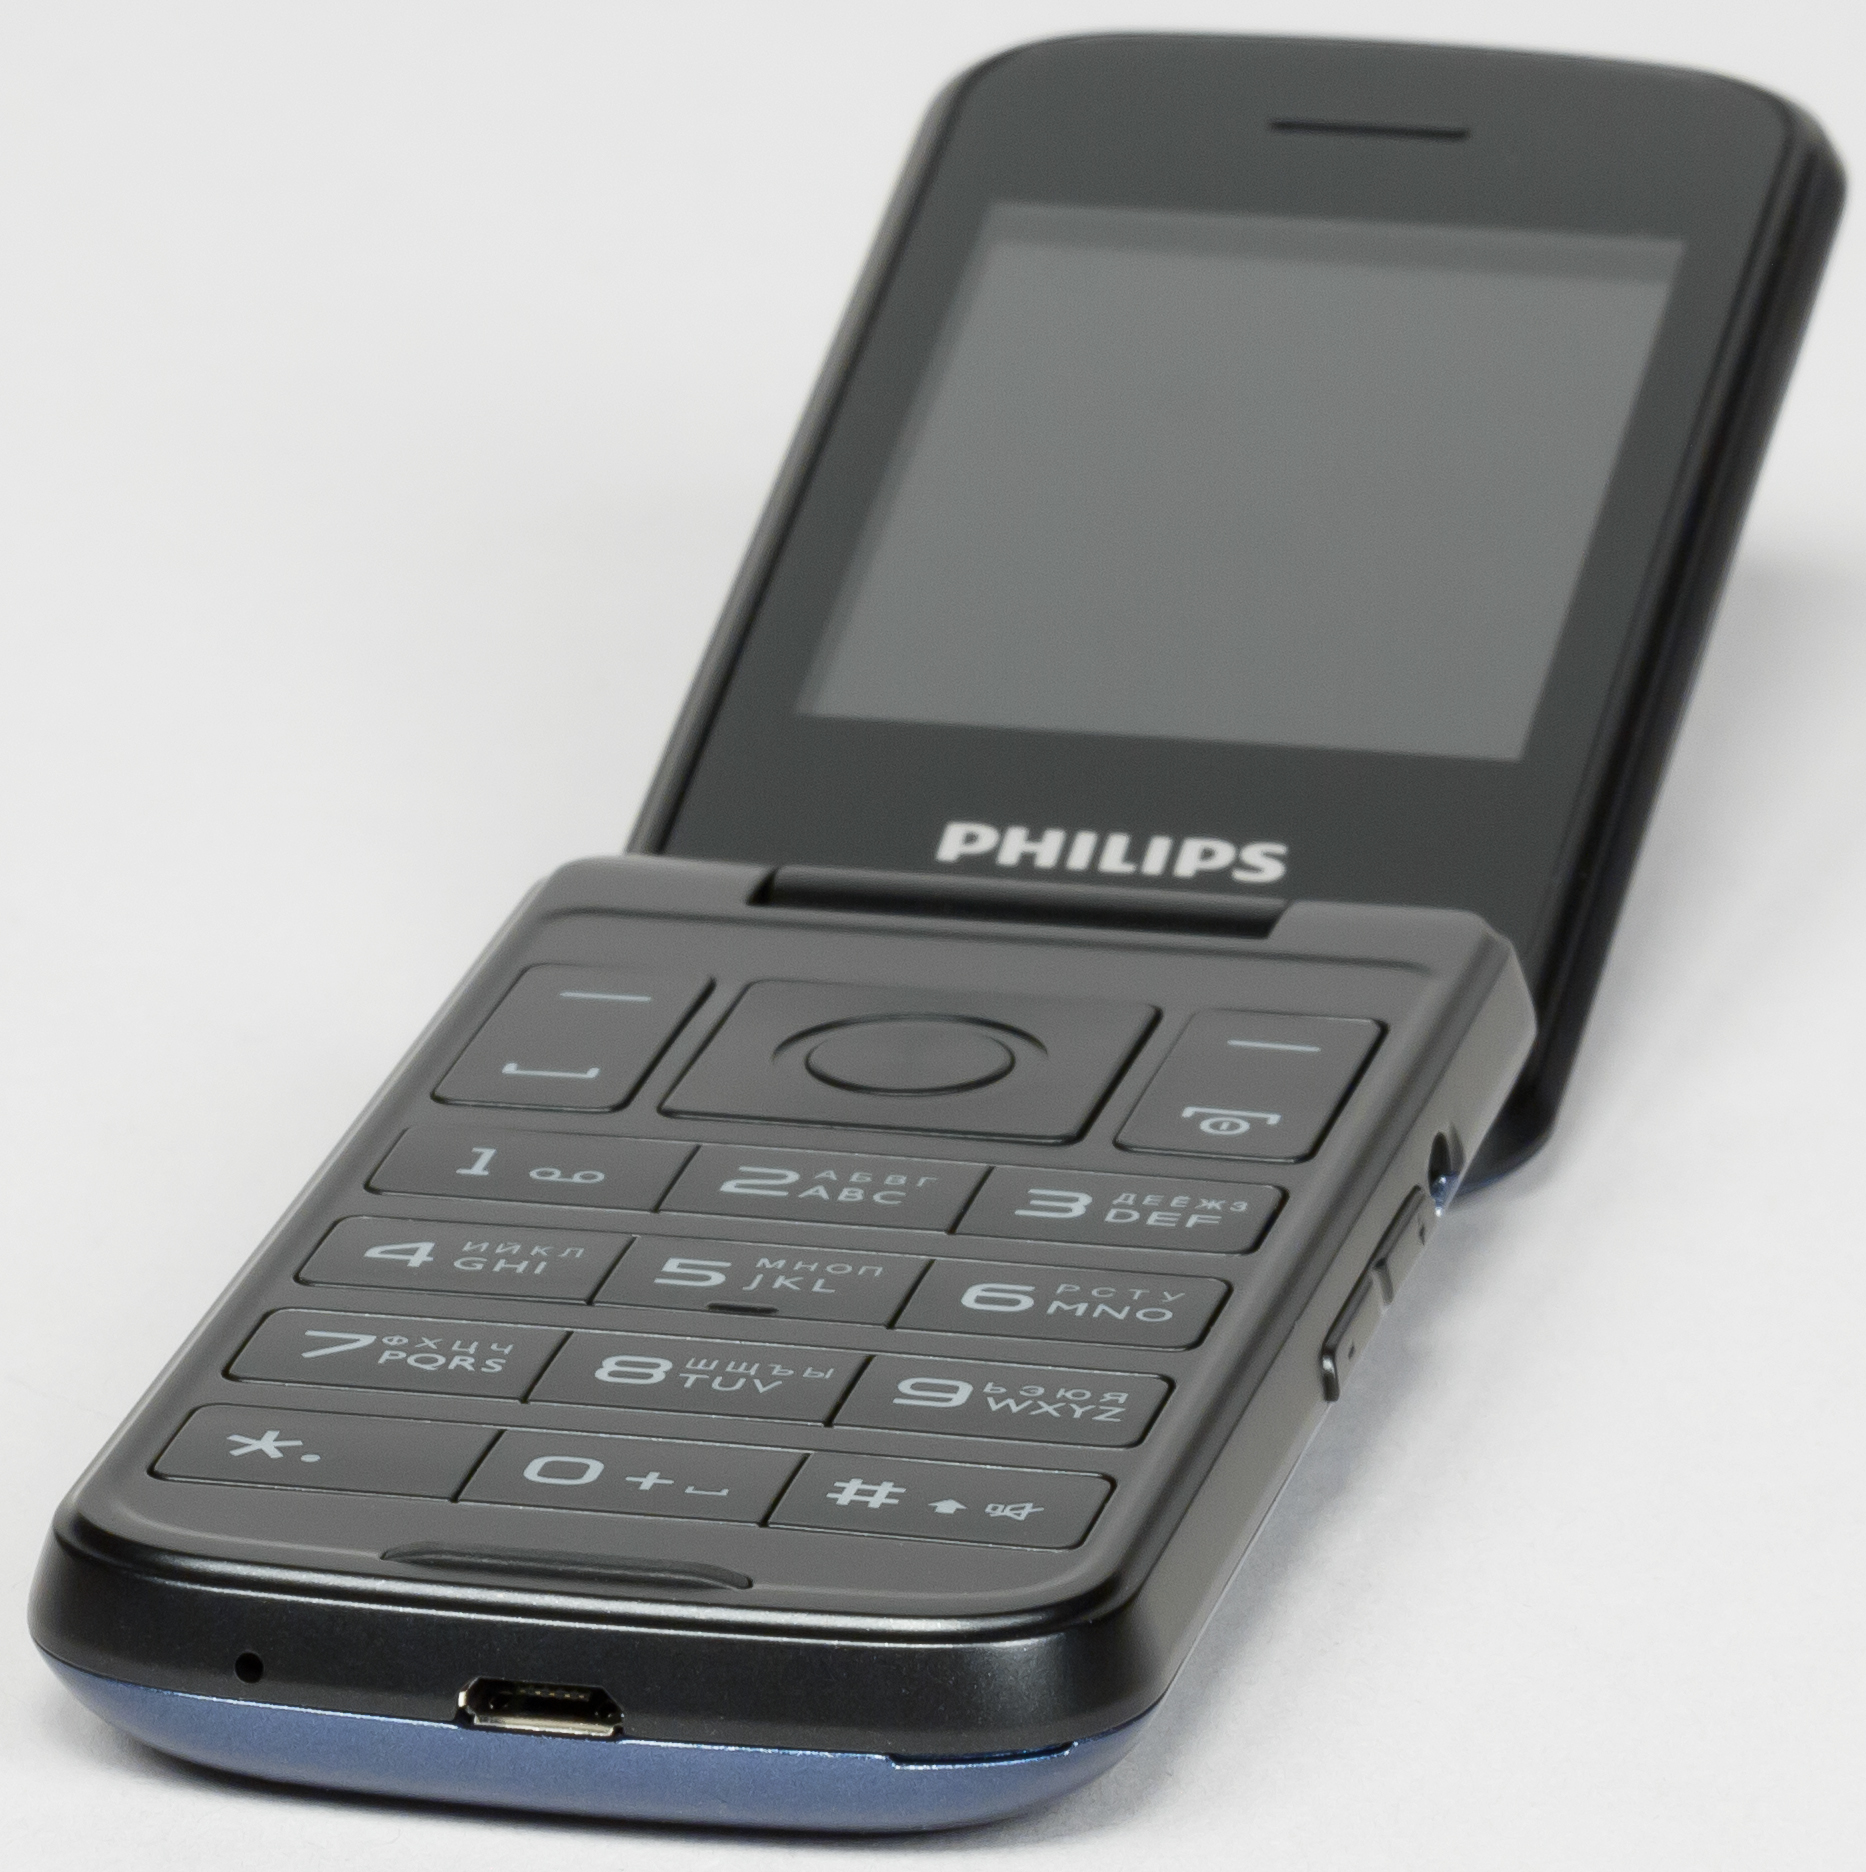 Philips xenium раскладушка. Филипс е255 раскладушка. Philips Xenium е255. Philips Xenium 255. Филипс ксениум кнопочный раскладушка.